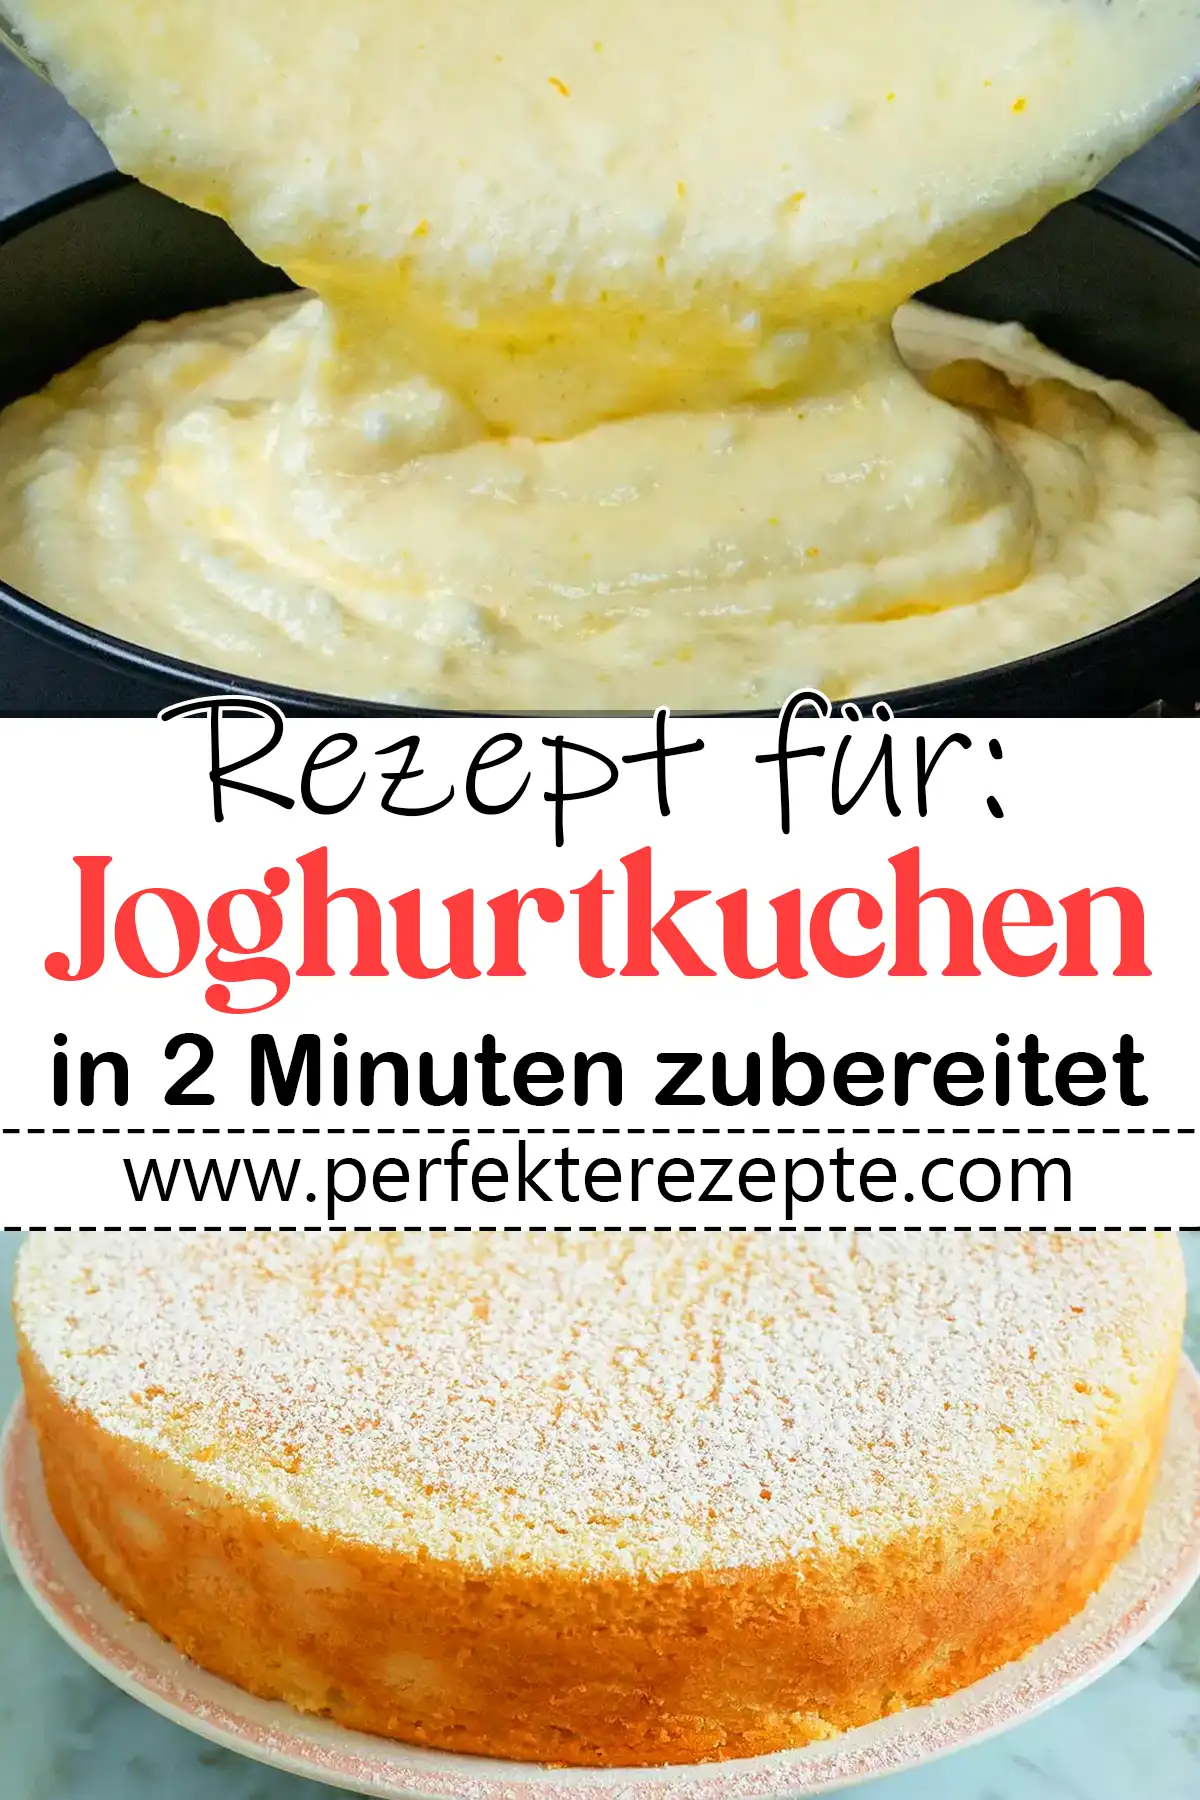 Joghurtkuchen Rezept in 2 Minuten zubereitet, ein Tassenrezept!